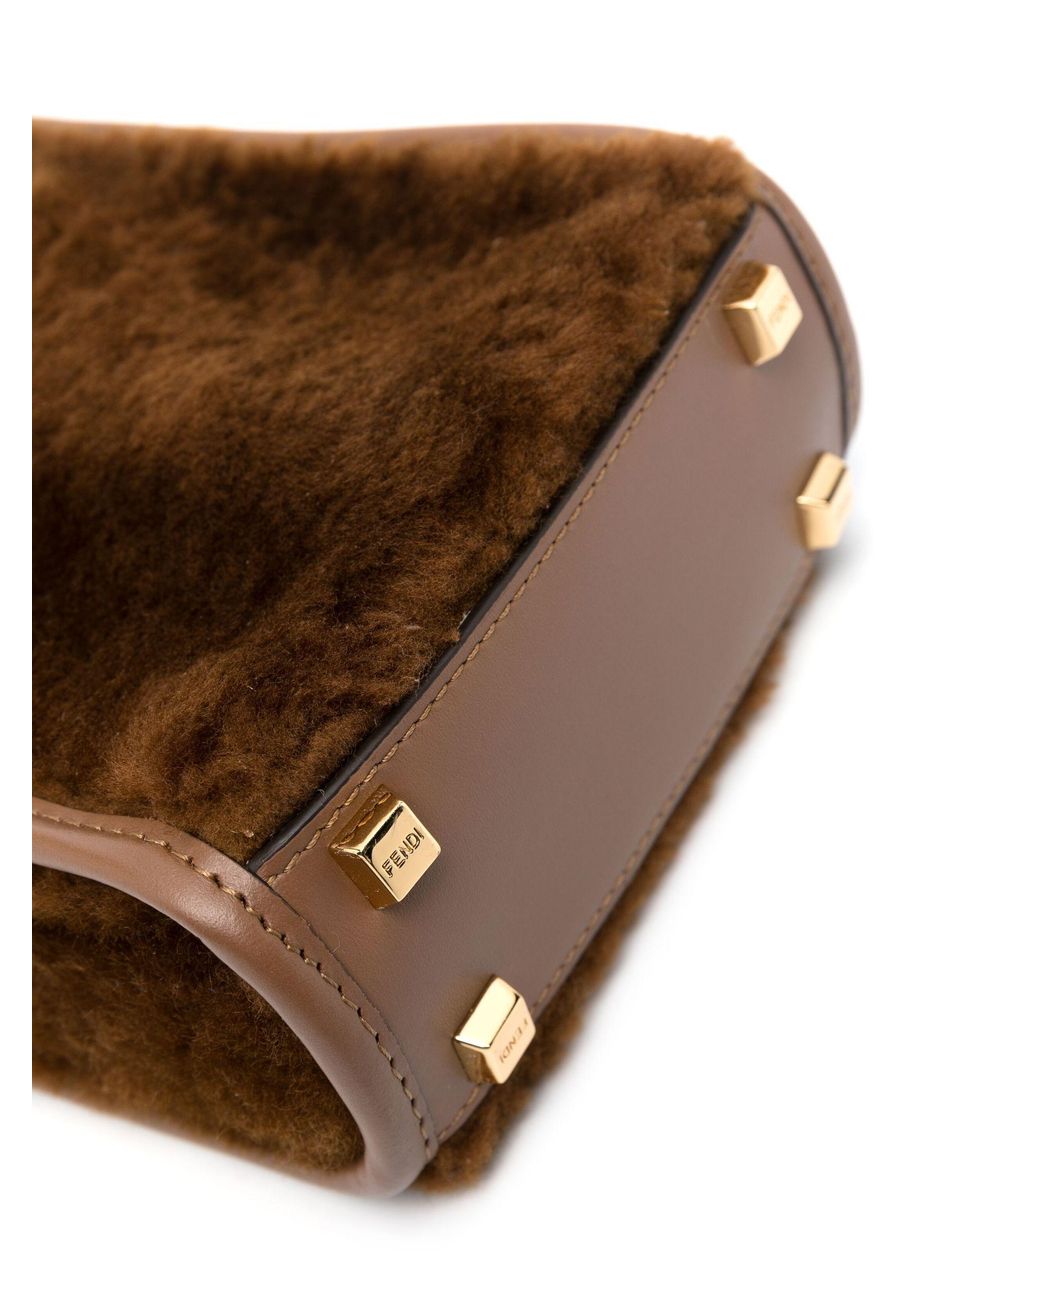 Fendi Brown Fur Tote Bag QBB05D160B001